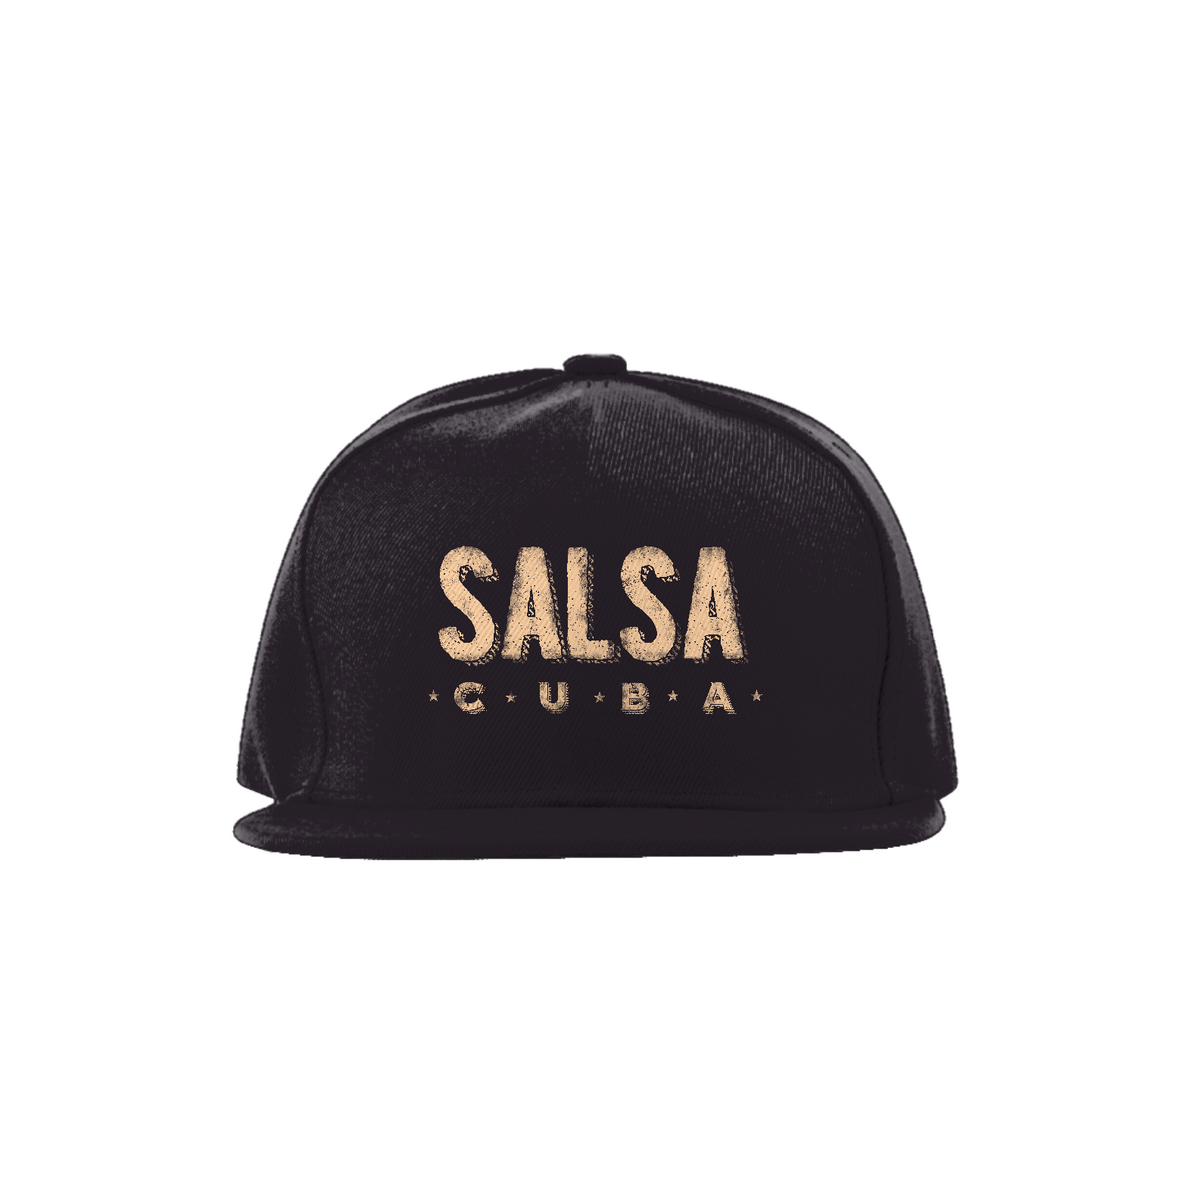 Nome do produto: Salsa - Cuba